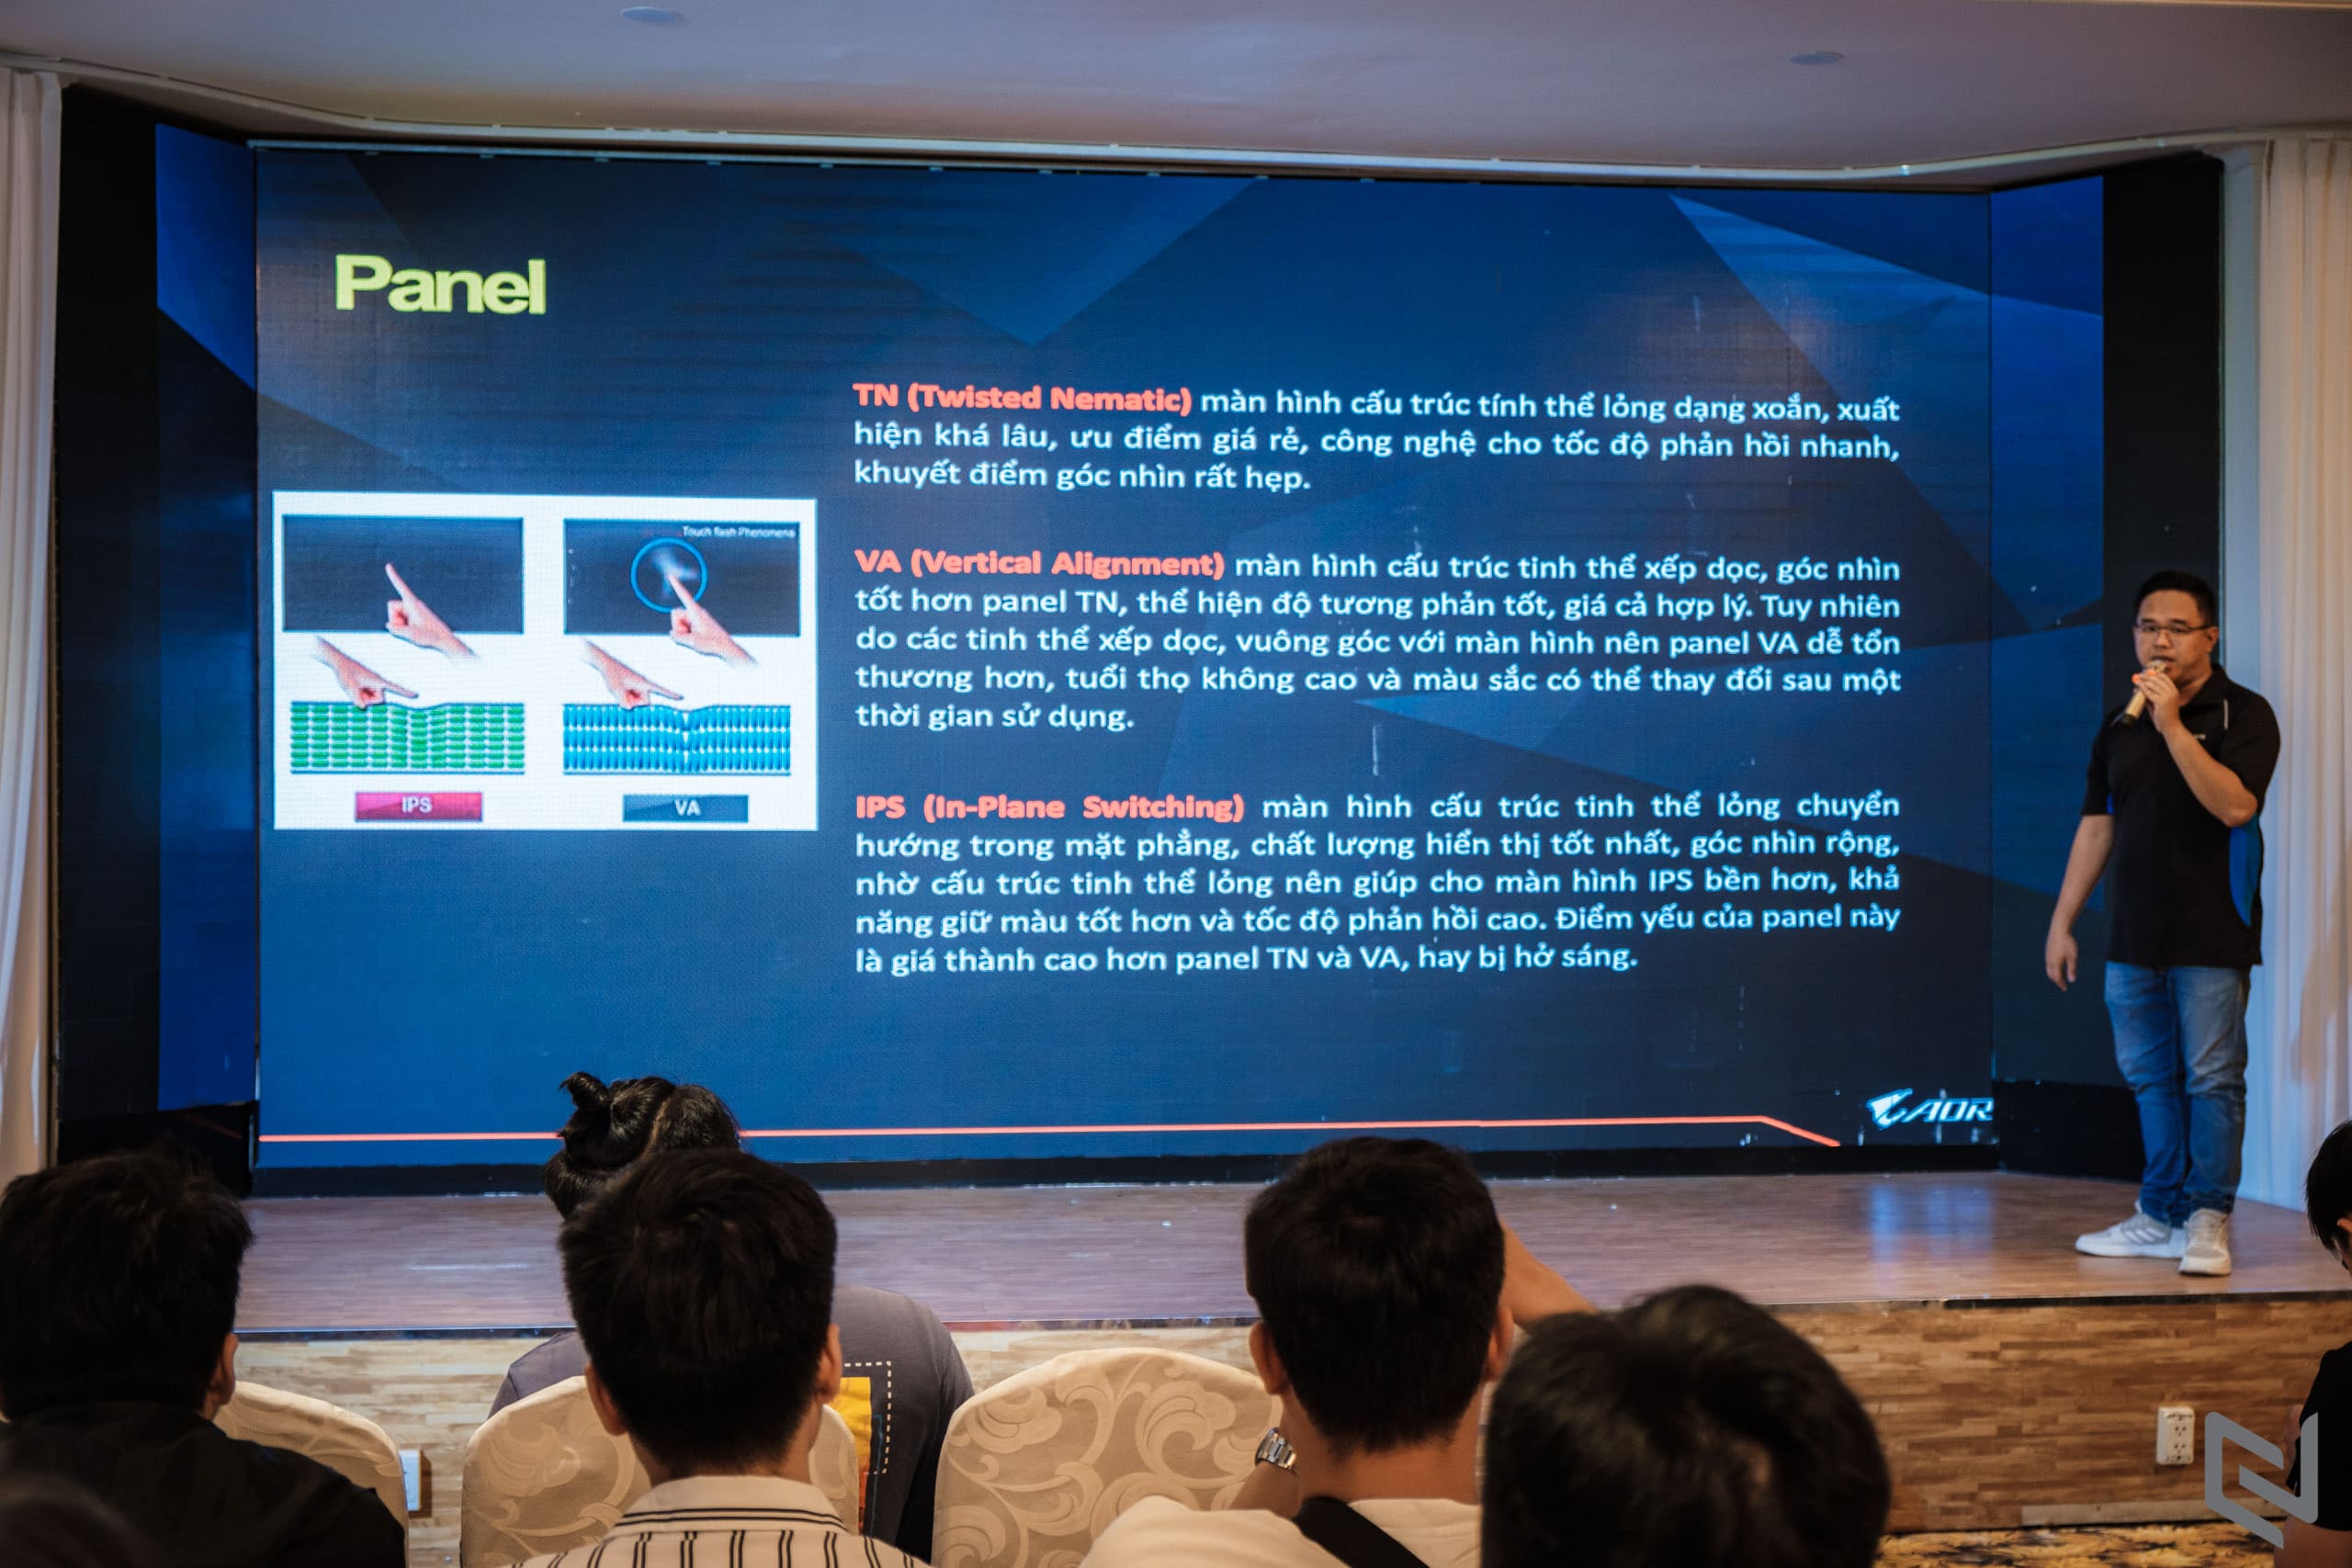 Hình ảnh ngày hội công nghệ Gigabyte - AORUS giới thiệu RTX 30 Series mới và thế hệ màn hình Gaming M/F Series